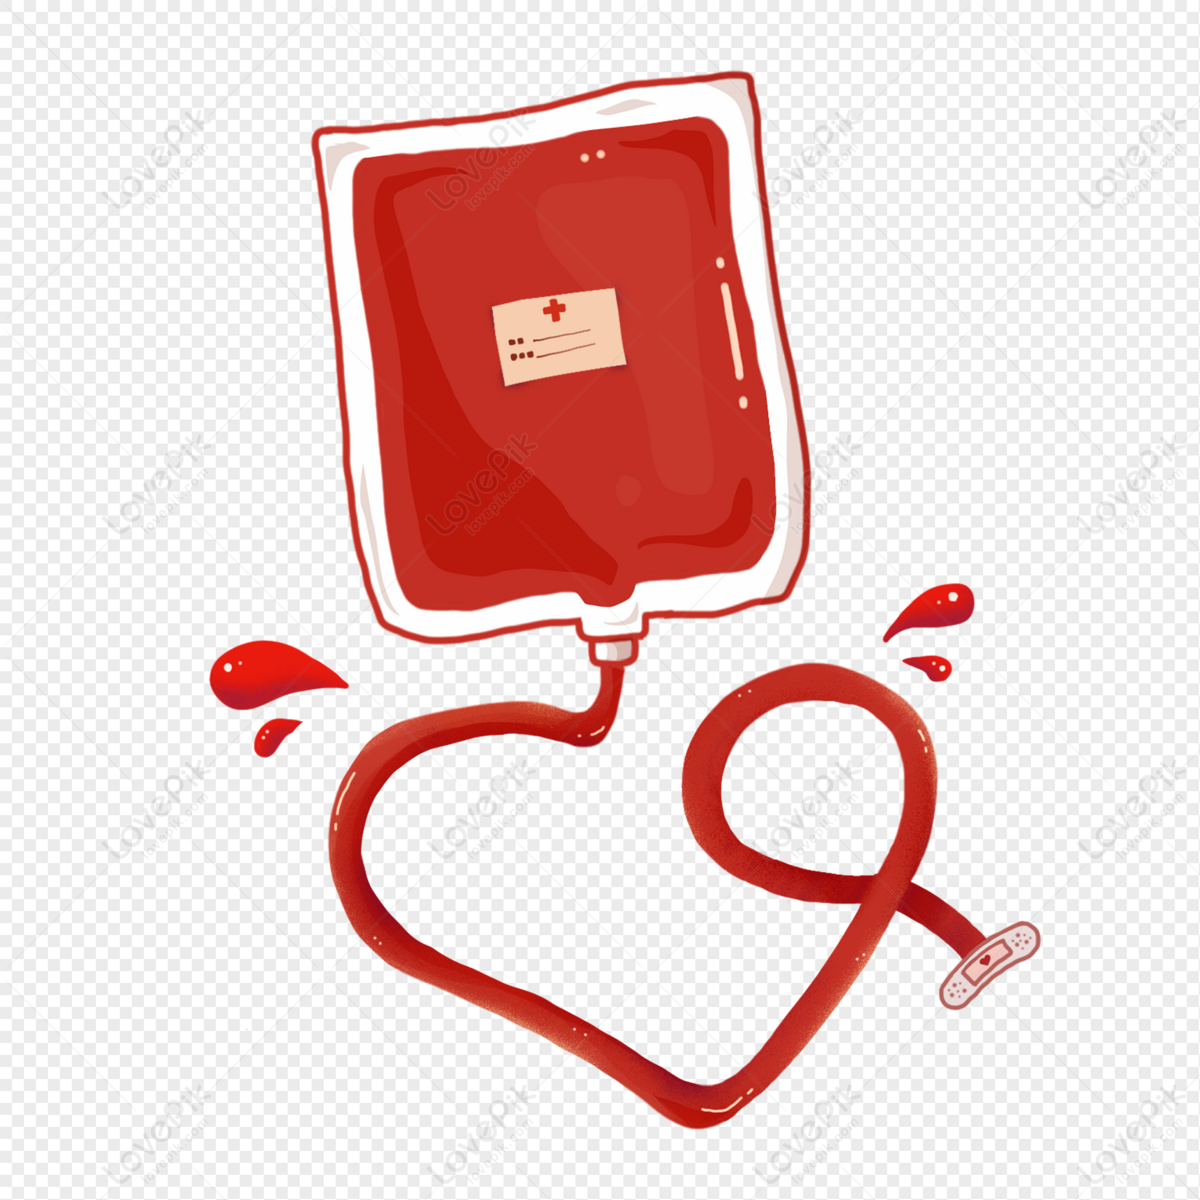 曝光 | 一图看懂-无偿献血幕后的那些事……|献血|曝光|看懂|血液|抗体|检测|血型|合格|-健康界